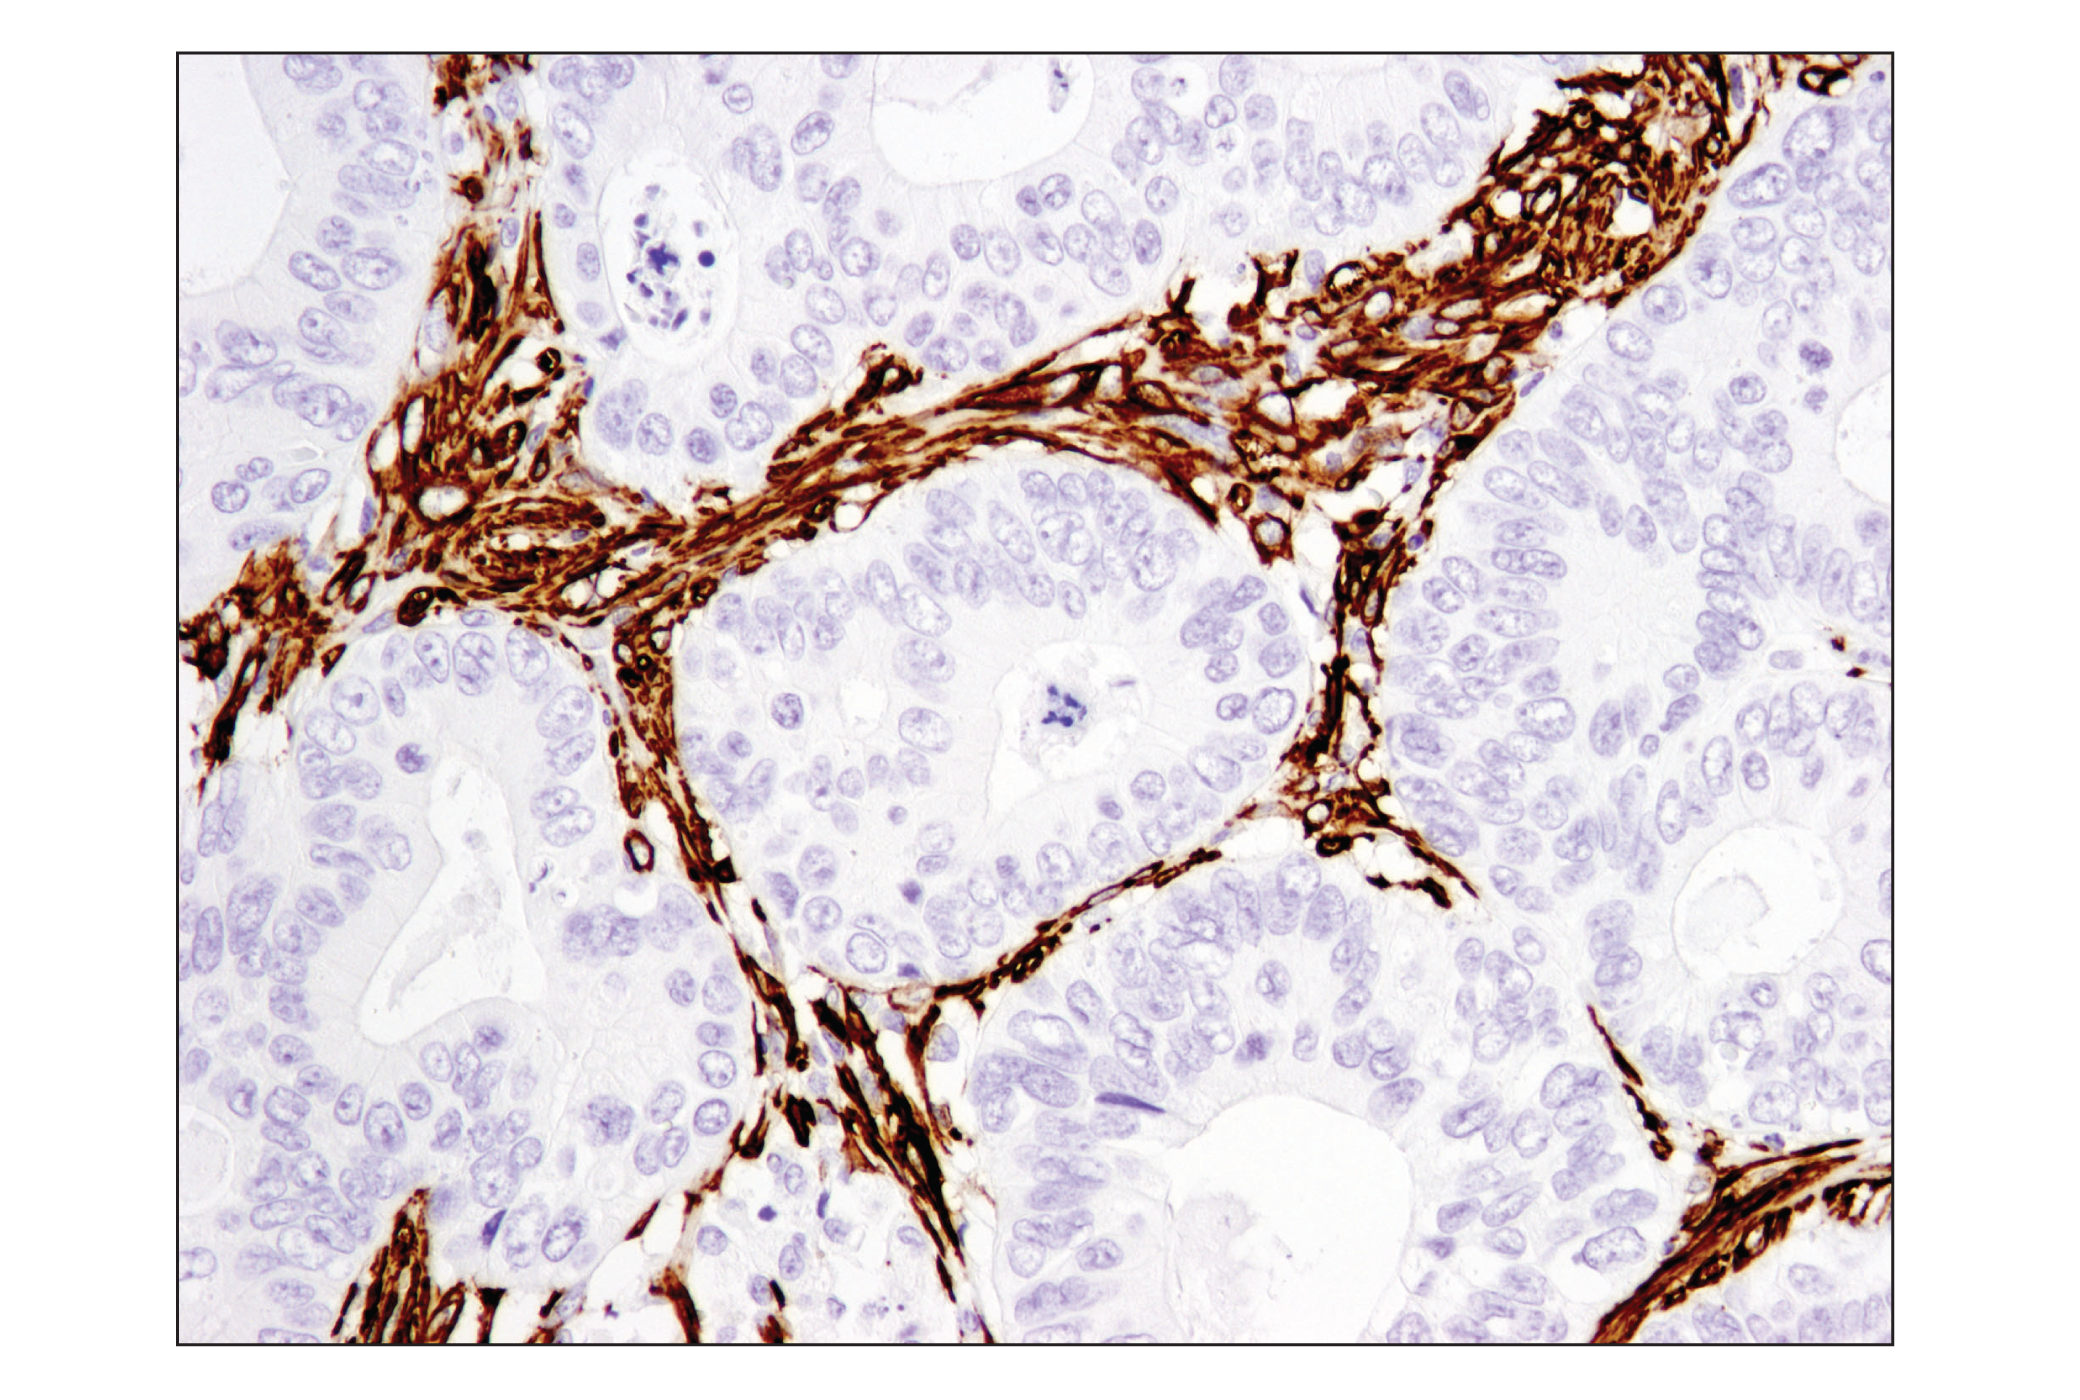  Image 31: TGF-β Fibrosis Pathway Antibody Sampler Kit